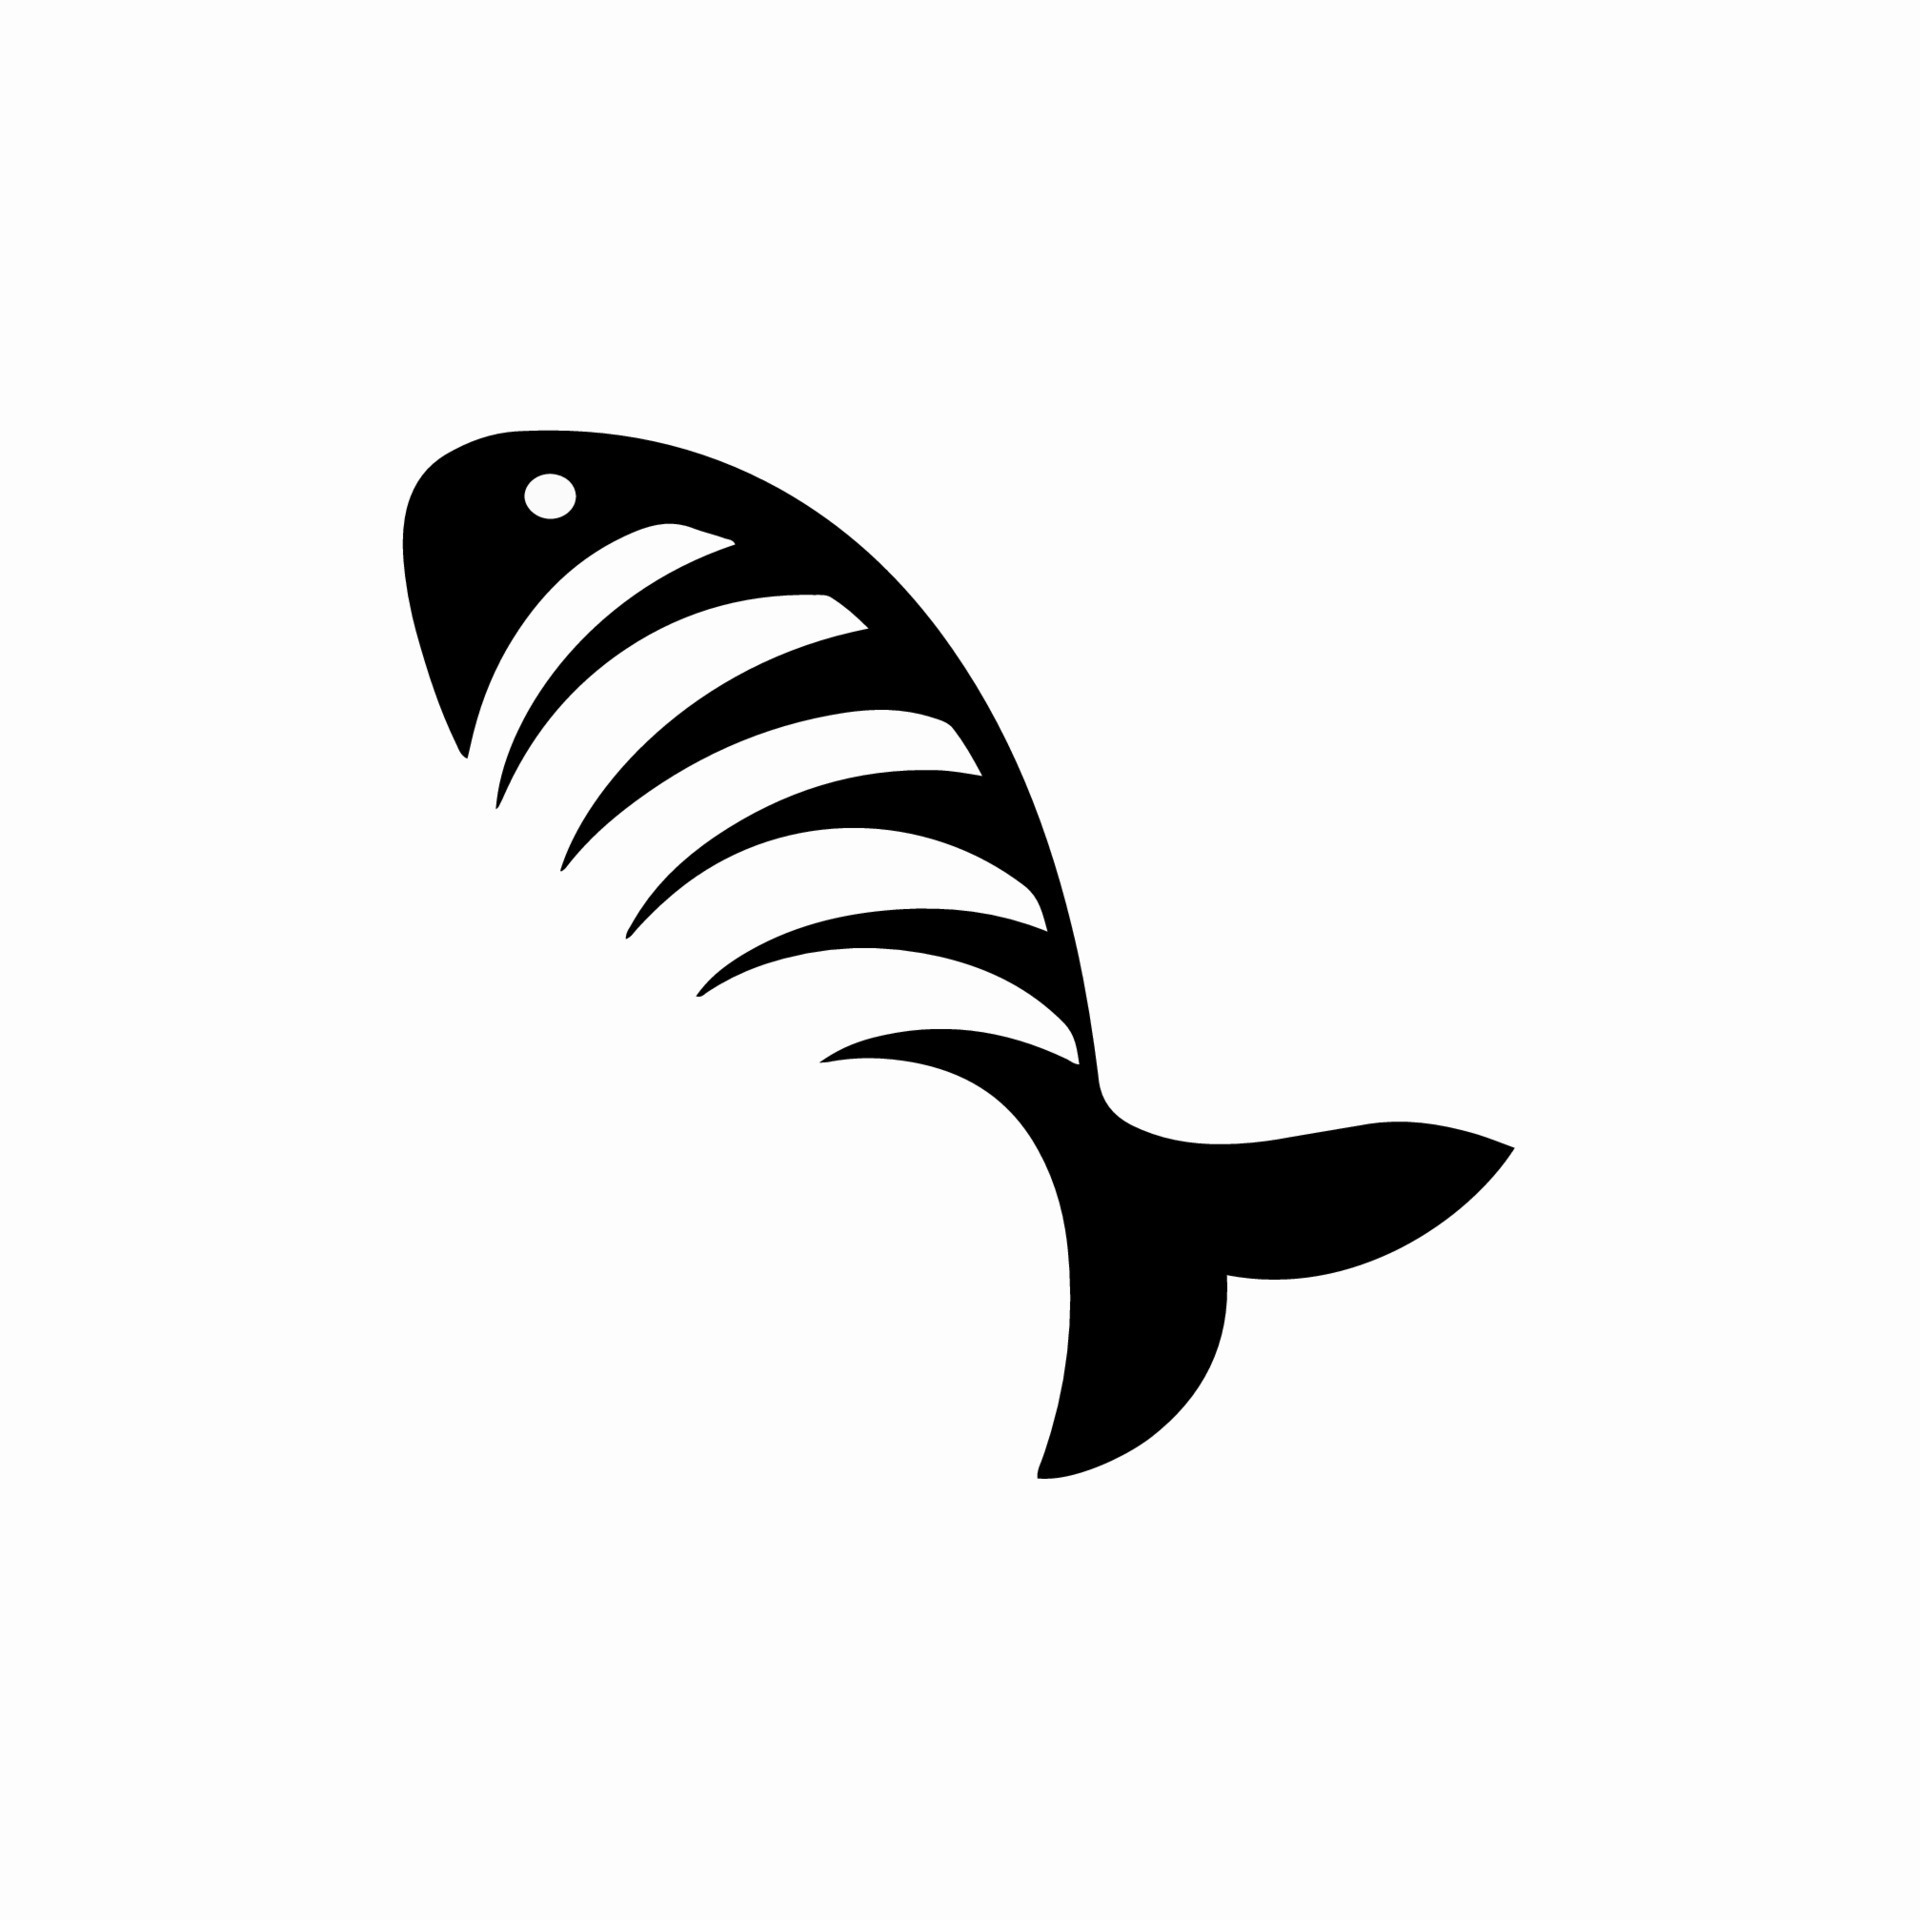 Fish Bone Icon Logo Design. Black and White Stencil Flat Vector